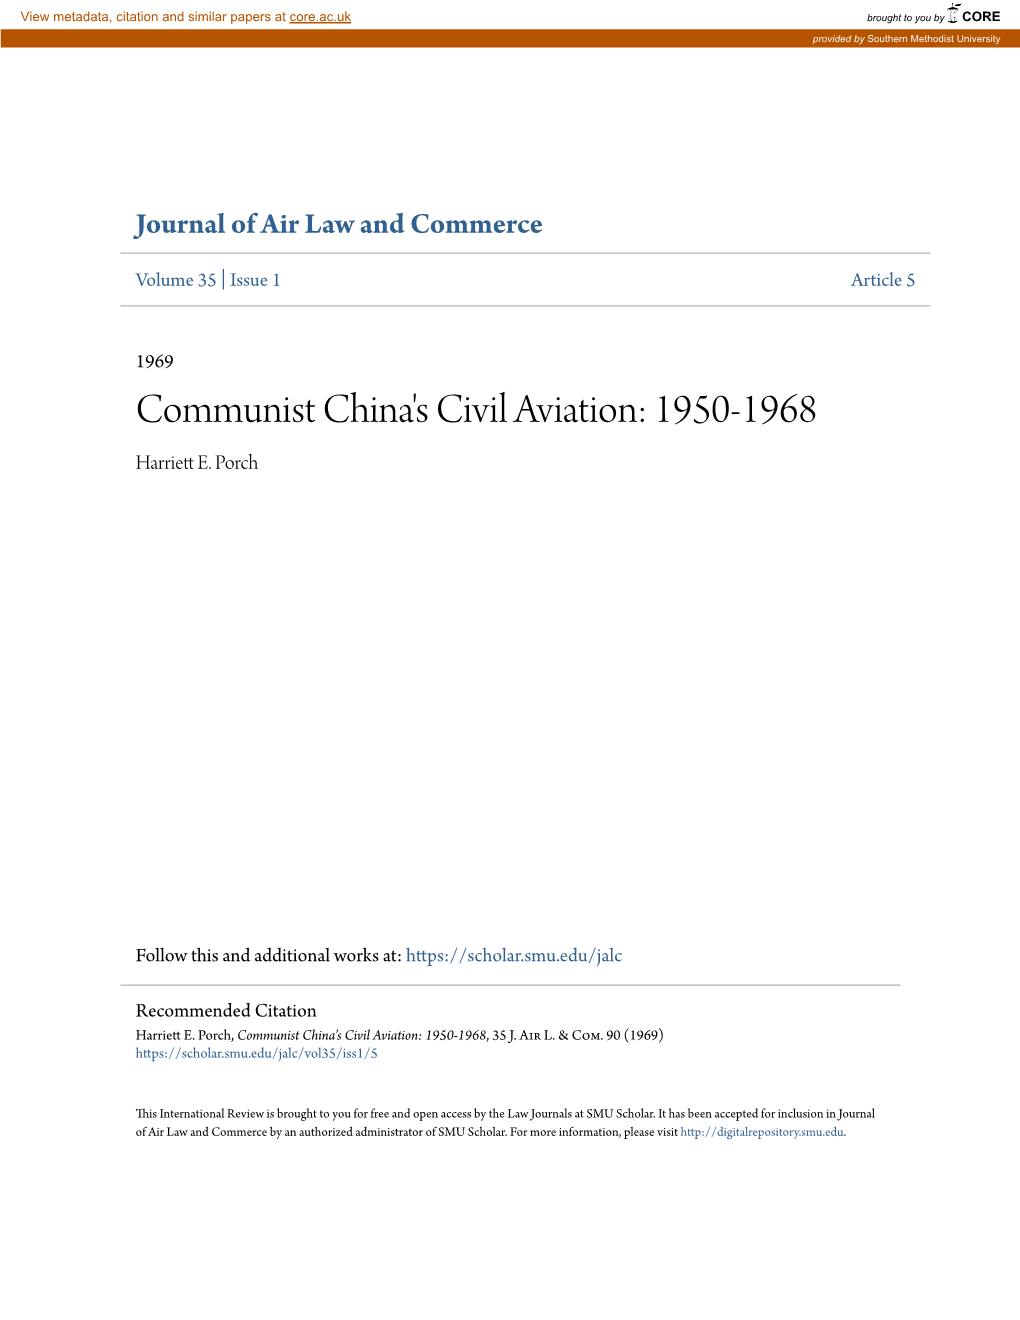 Communist China's Civil Aviation: 1950-1968 Harriett E